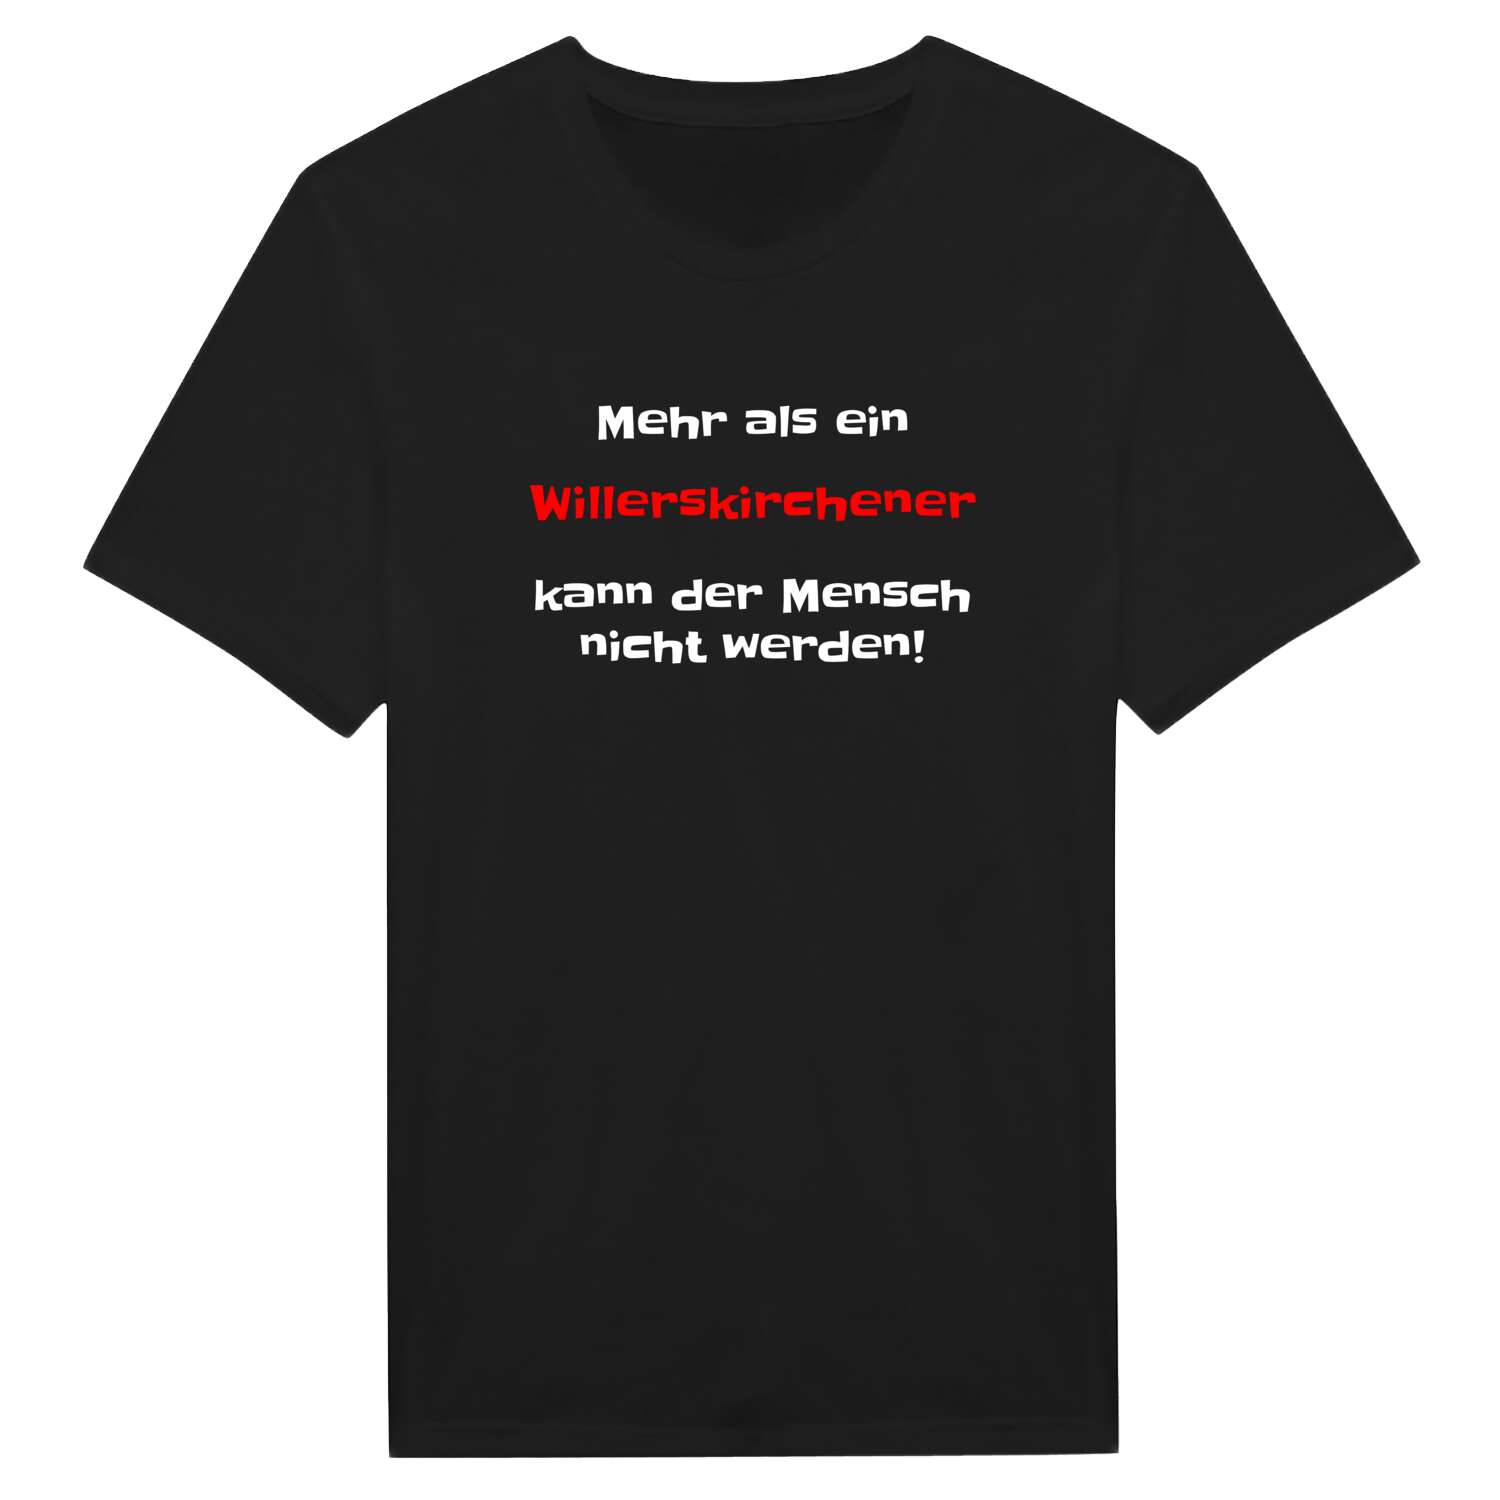 Willerskirchen T-Shirt »Mehr als ein«